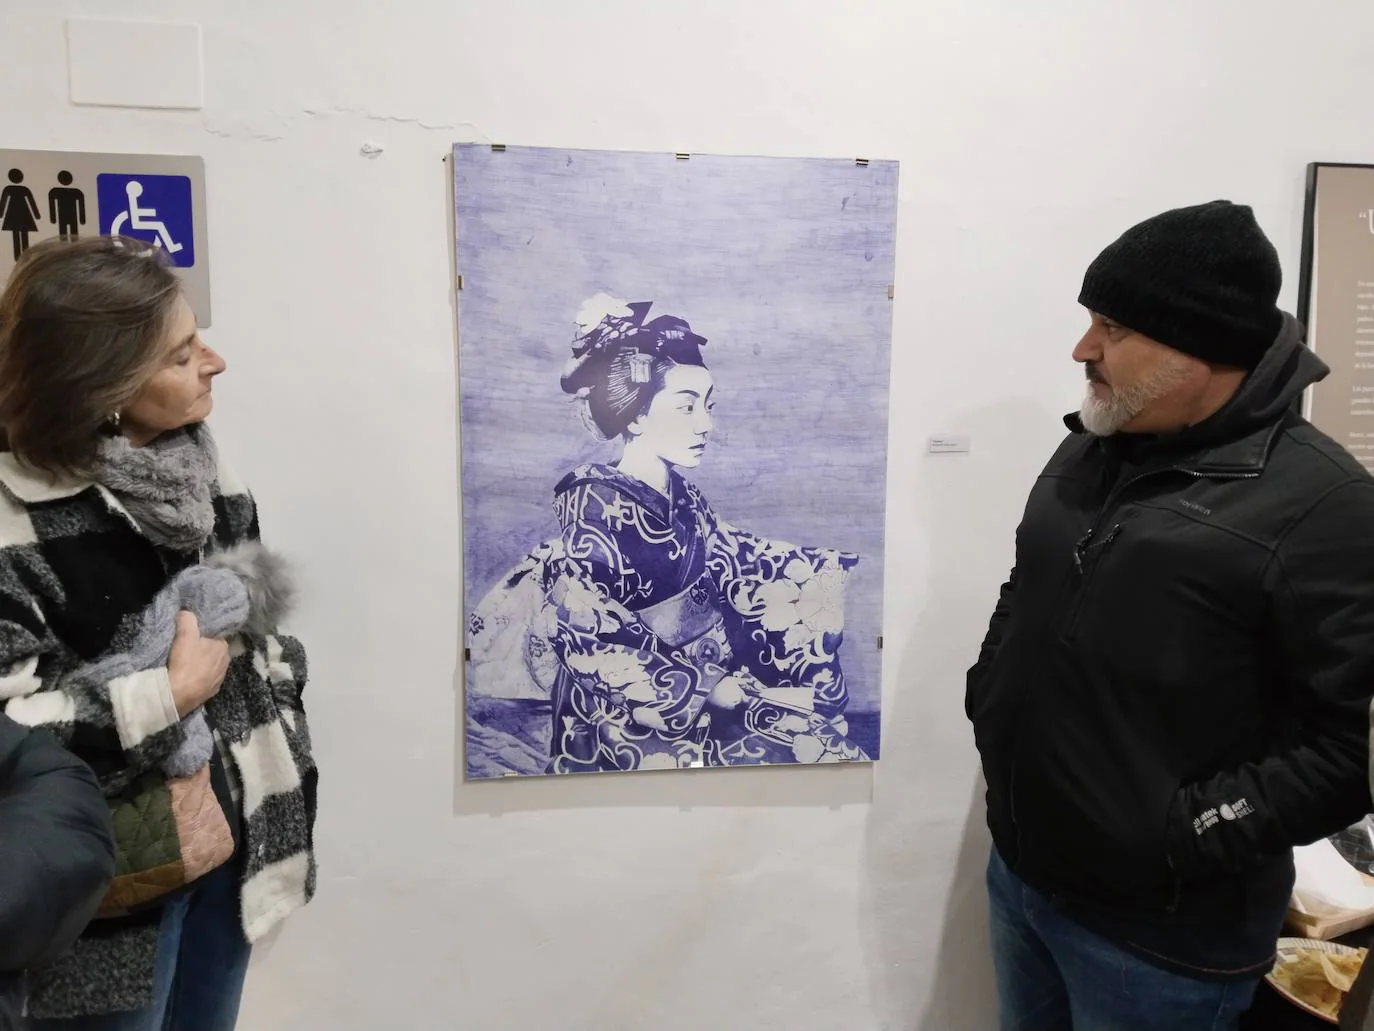 Imagen secundaria 1 - El Museo del Queso abre sus puertas al mundo artístico, y Candela Borges expone por primera vez su obra